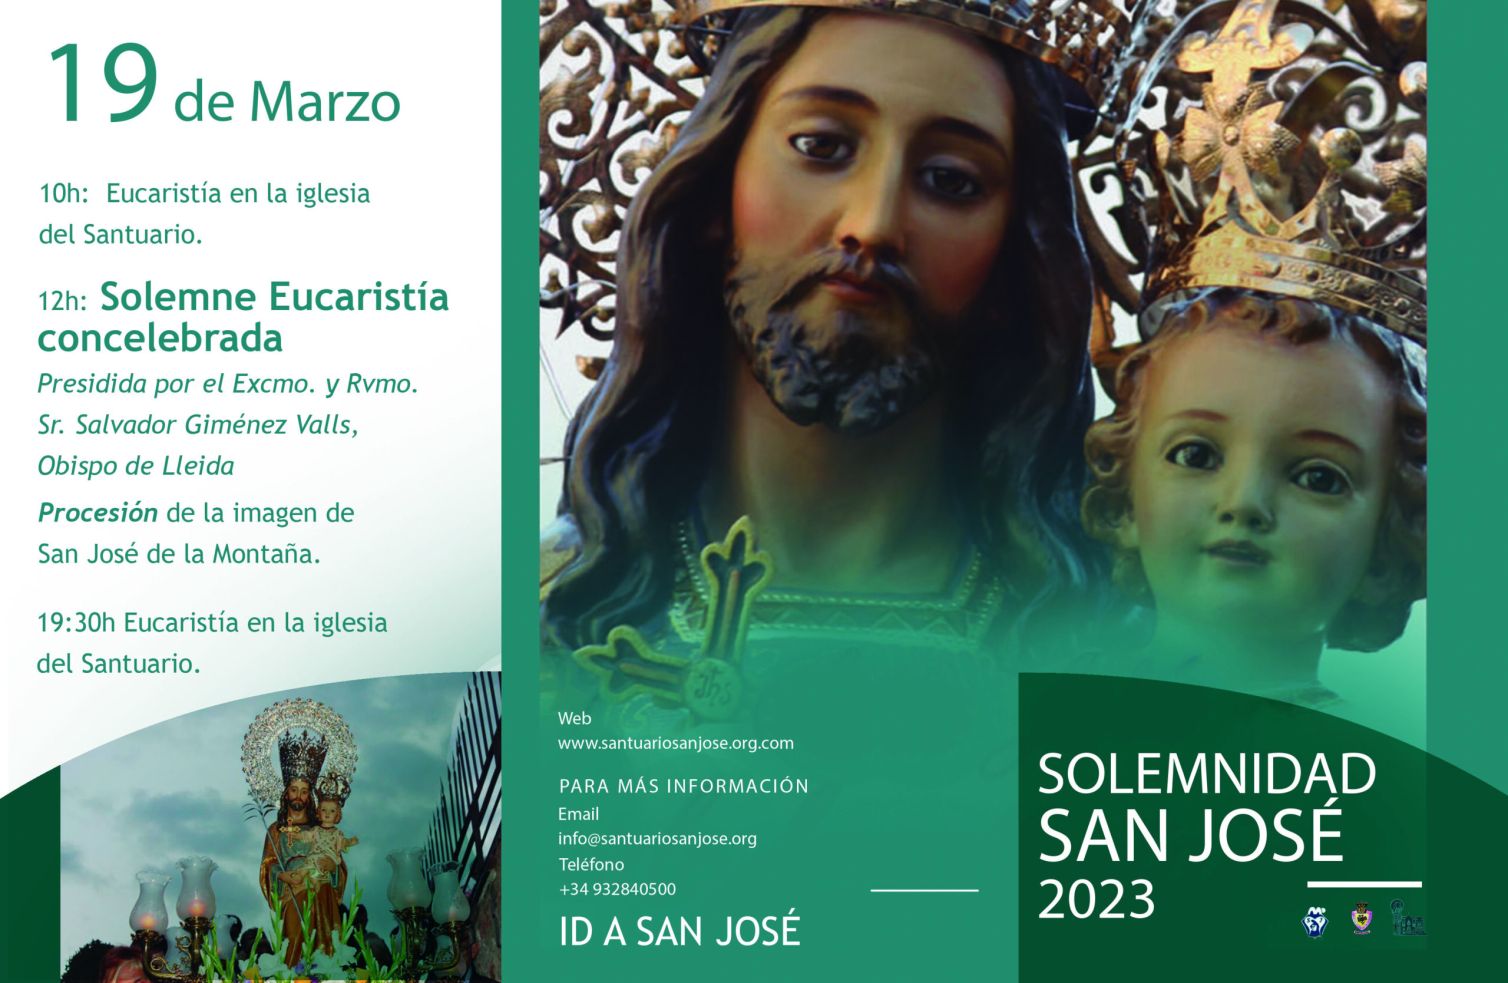 Solemnidad de San José en el Santuario san josé de la Montaña 2023